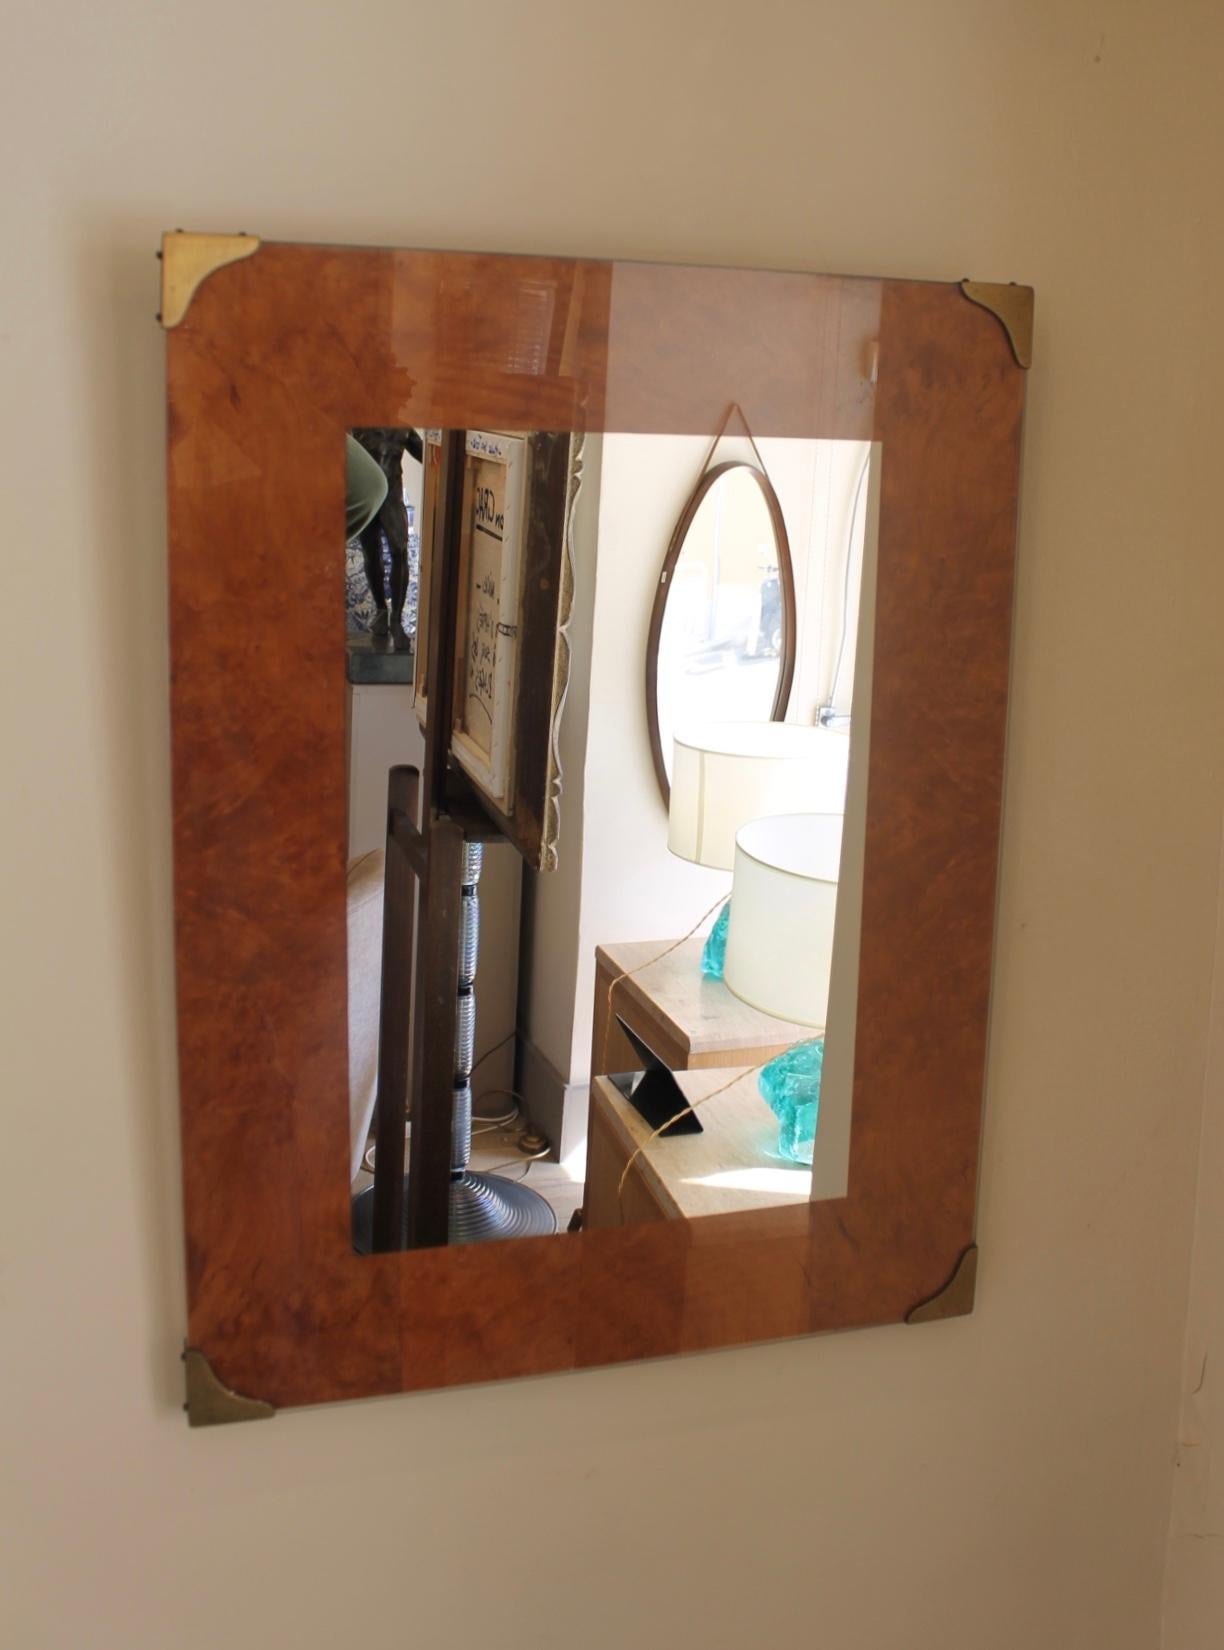 Miroir rectangulaire en érable moucheté des années 1970 dans le style de Willy Rizzo. Au centre, un miroir. Quatre en laiton.

Belle réalisation. Très bien au-dessus d'une commode ou d'une console.